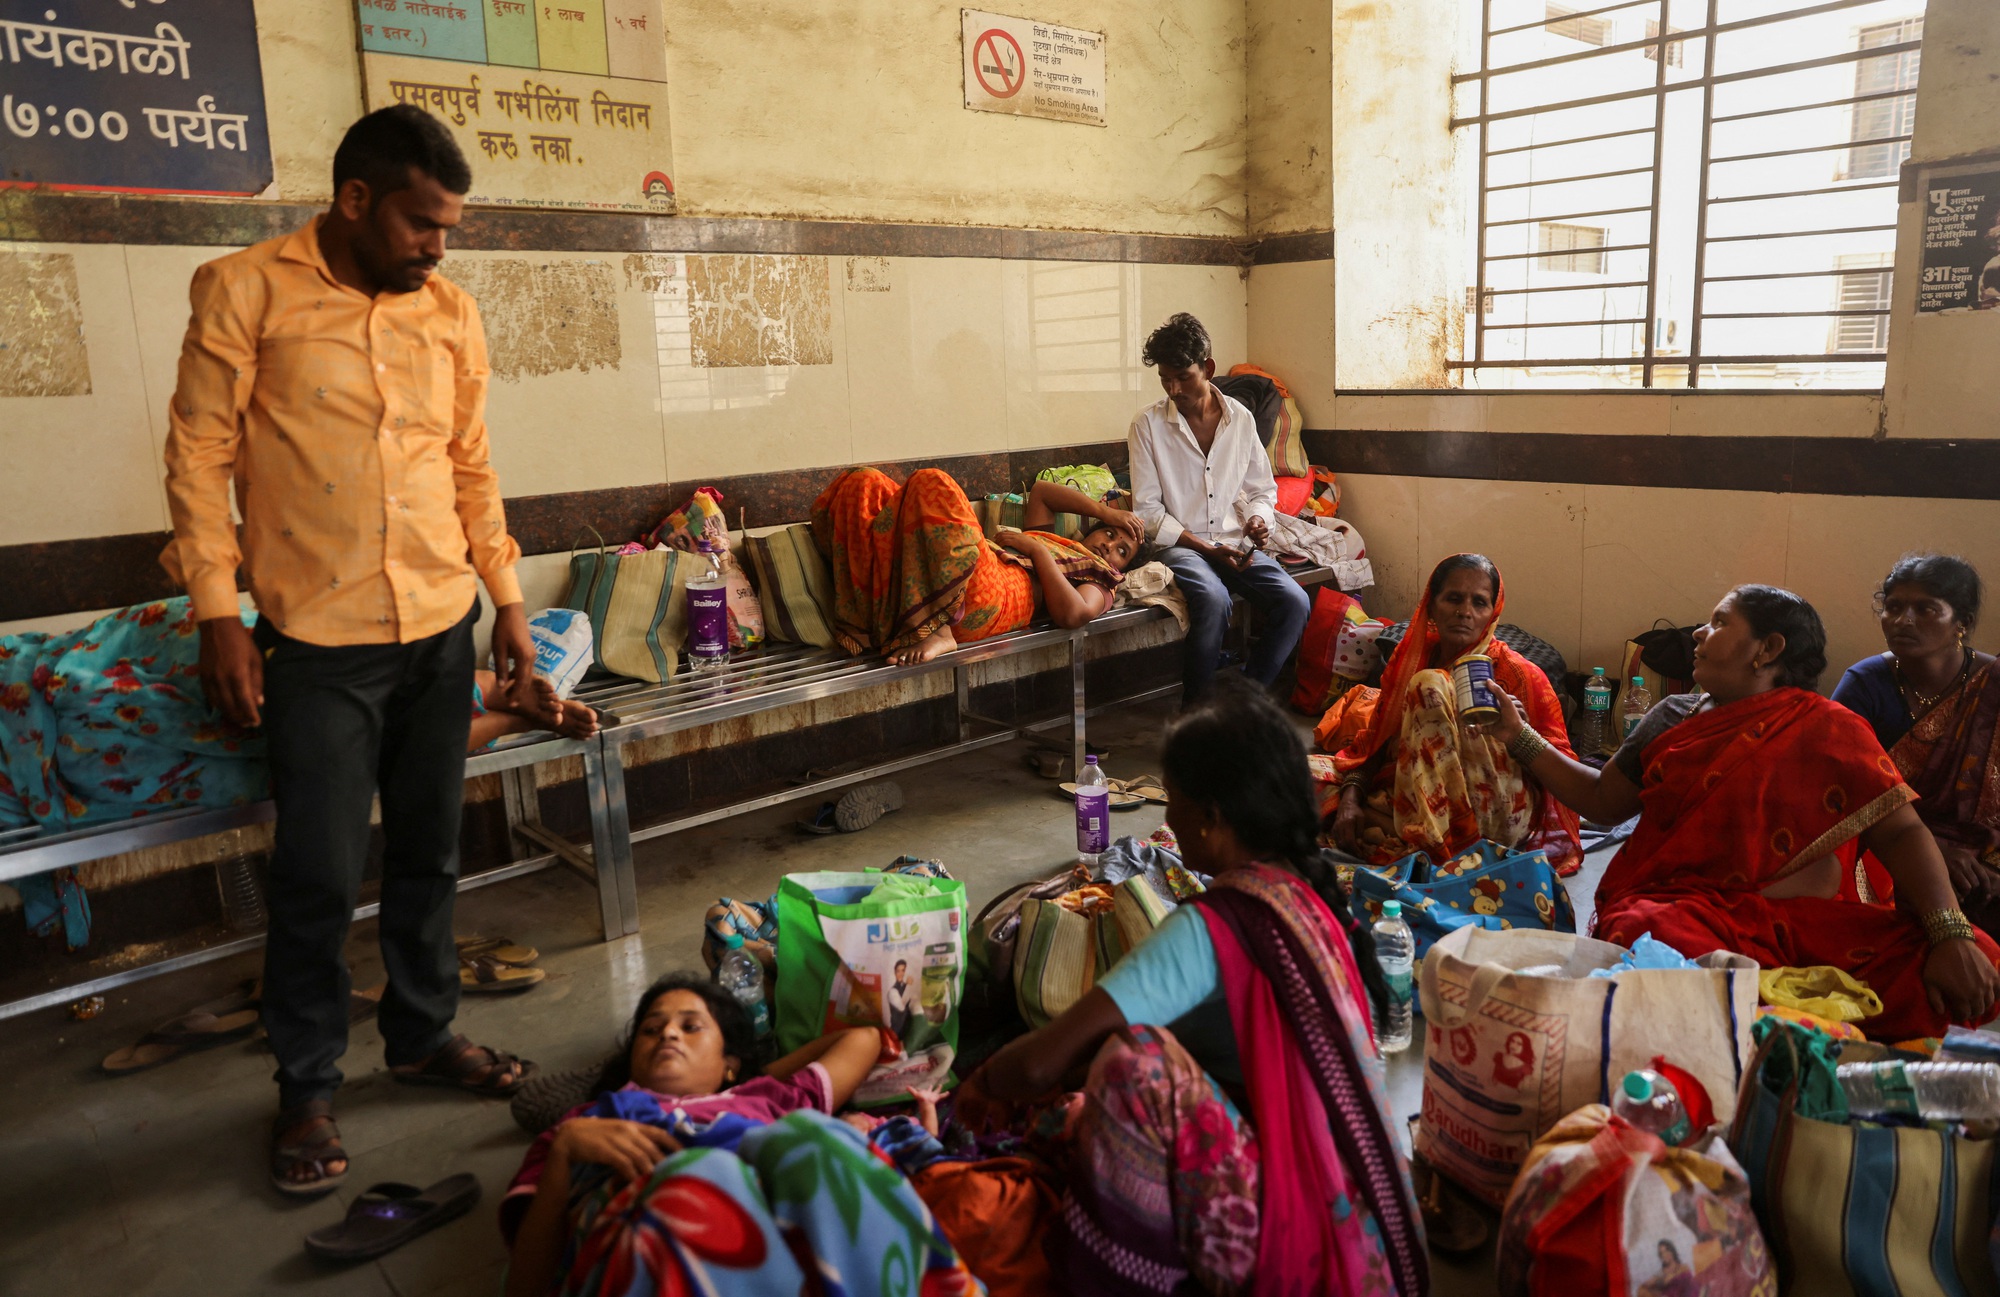 12 trẻ sơ sinh tử vong trong cùng một ngày ở bệnh viện Ấn Độ  - Ảnh 1.